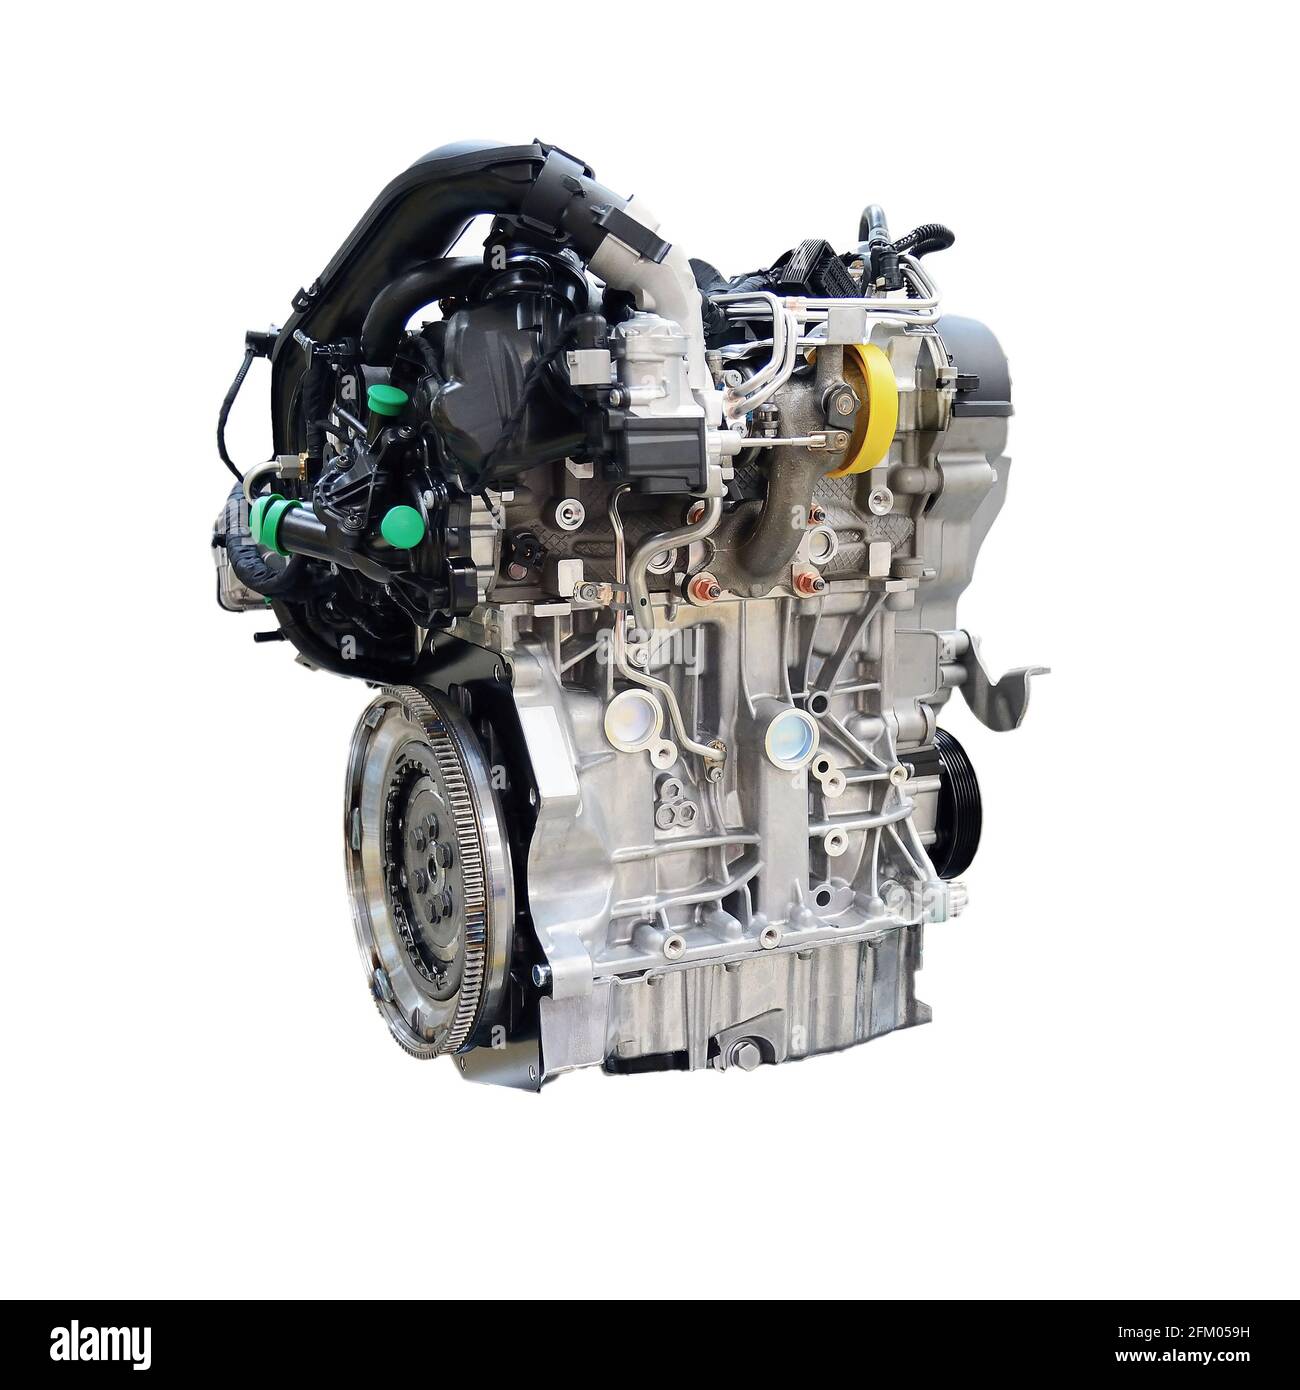 Un moderno motore per auto isolato su sfondo bianco. Immagine concettuale di un nuovo motore per auto. Concetto di industria automobilistica. Foto Stock